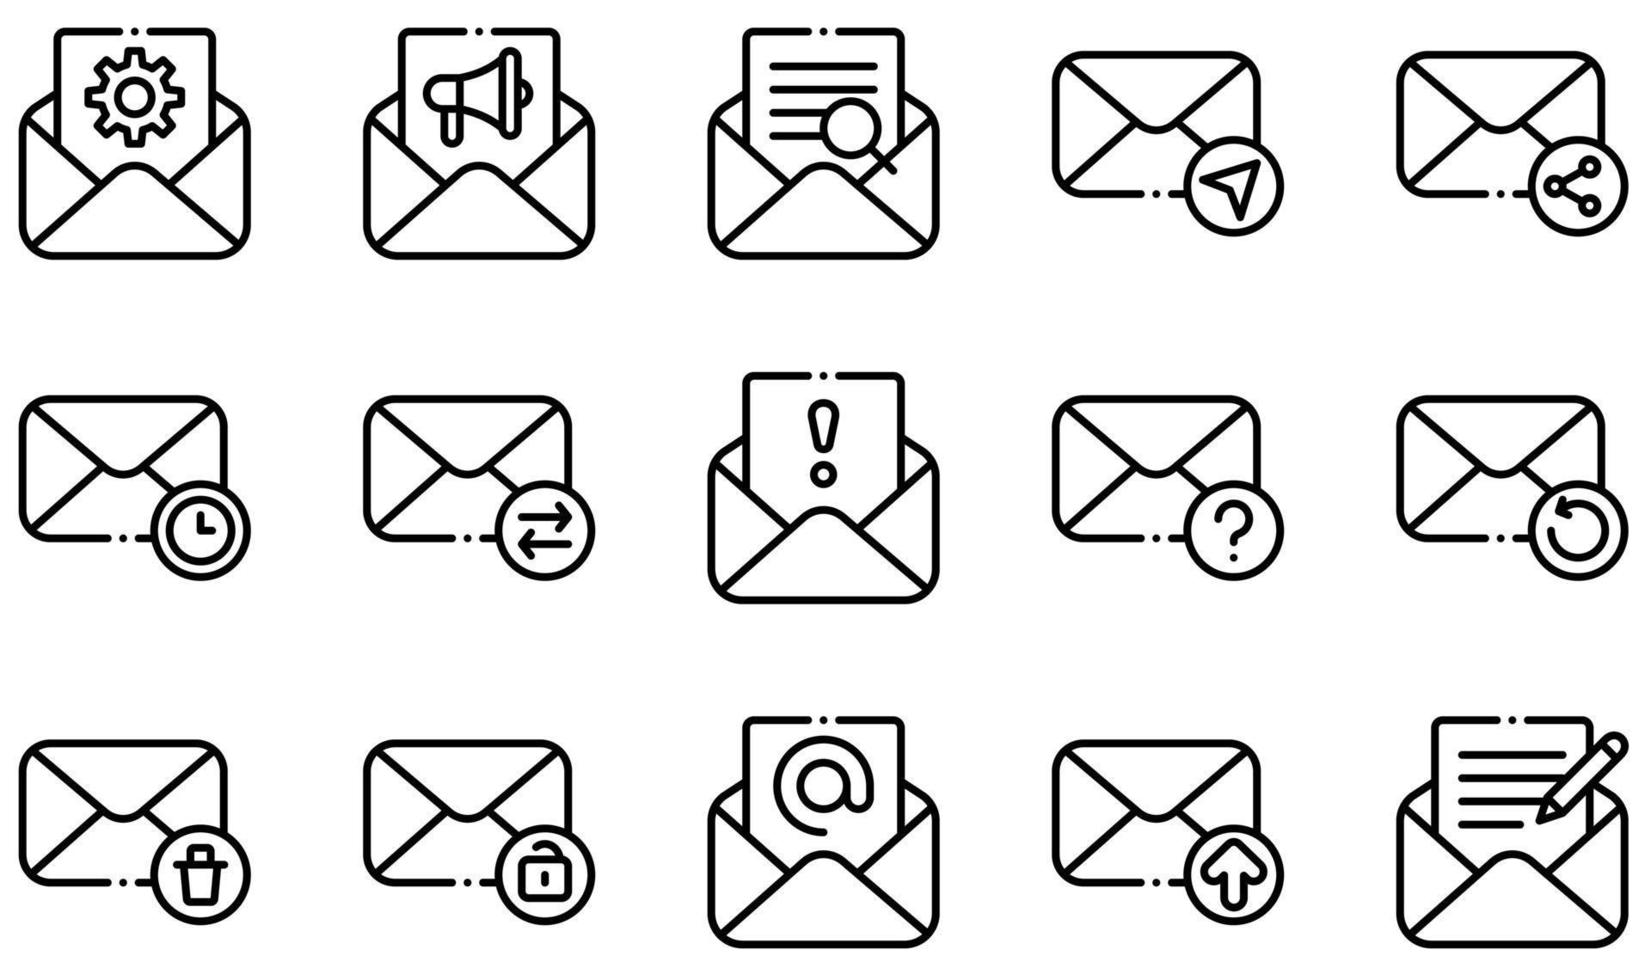 conjunto de iconos vectoriales relacionados con el correo electrónico. contiene íconos como correo electrónico abierto, opciones, búsqueda, envío de correo, spam, carga y más. vector